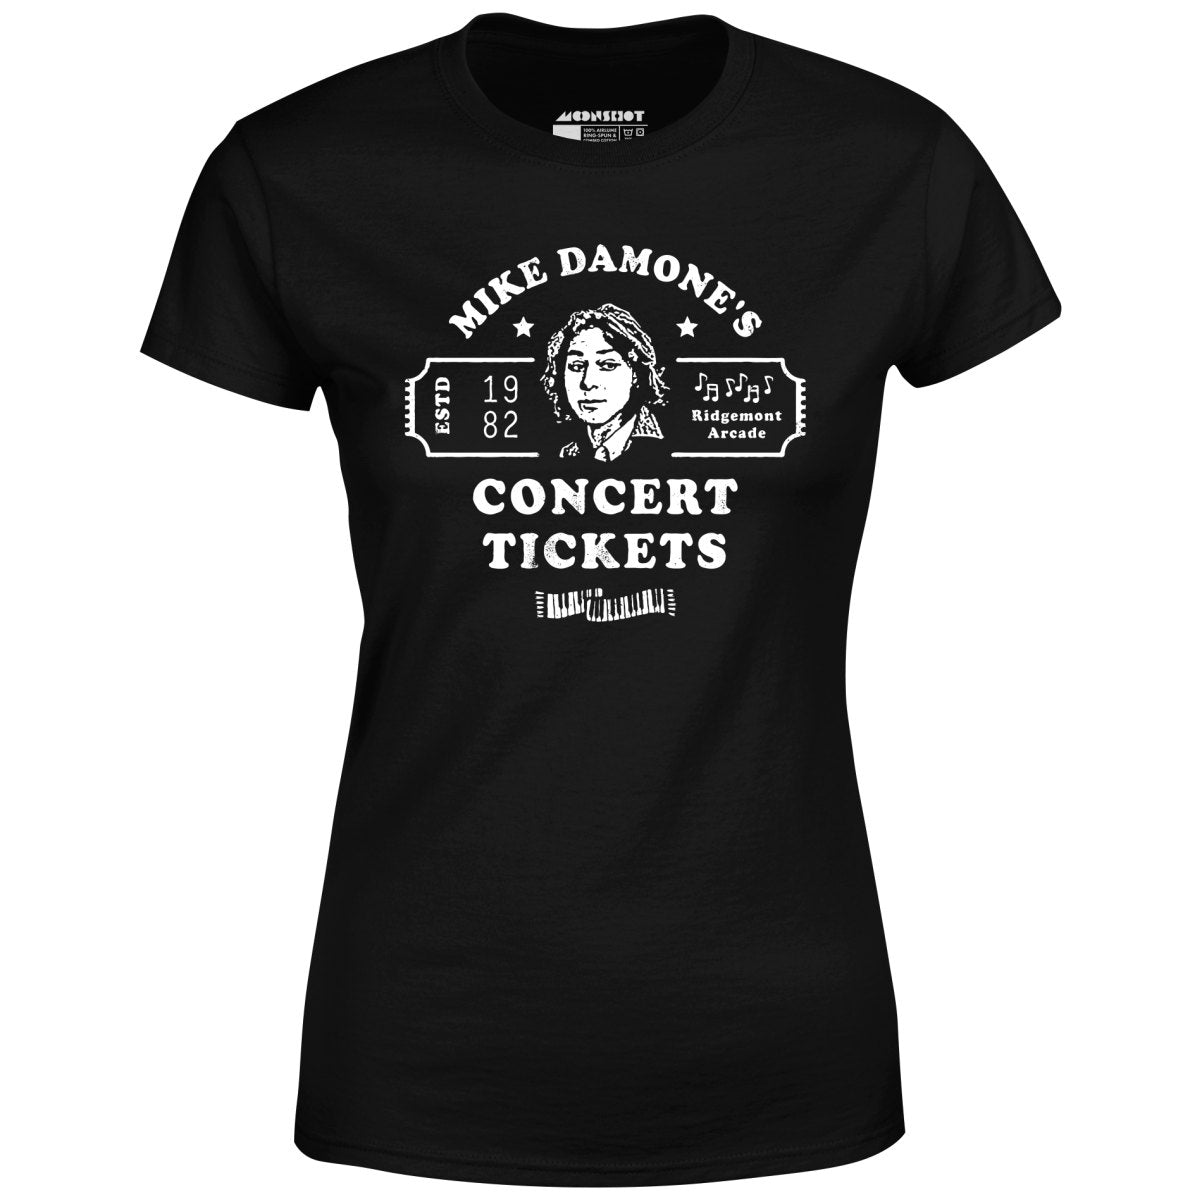 Mike Damone's Concert Tickets - Women's T-Shirt